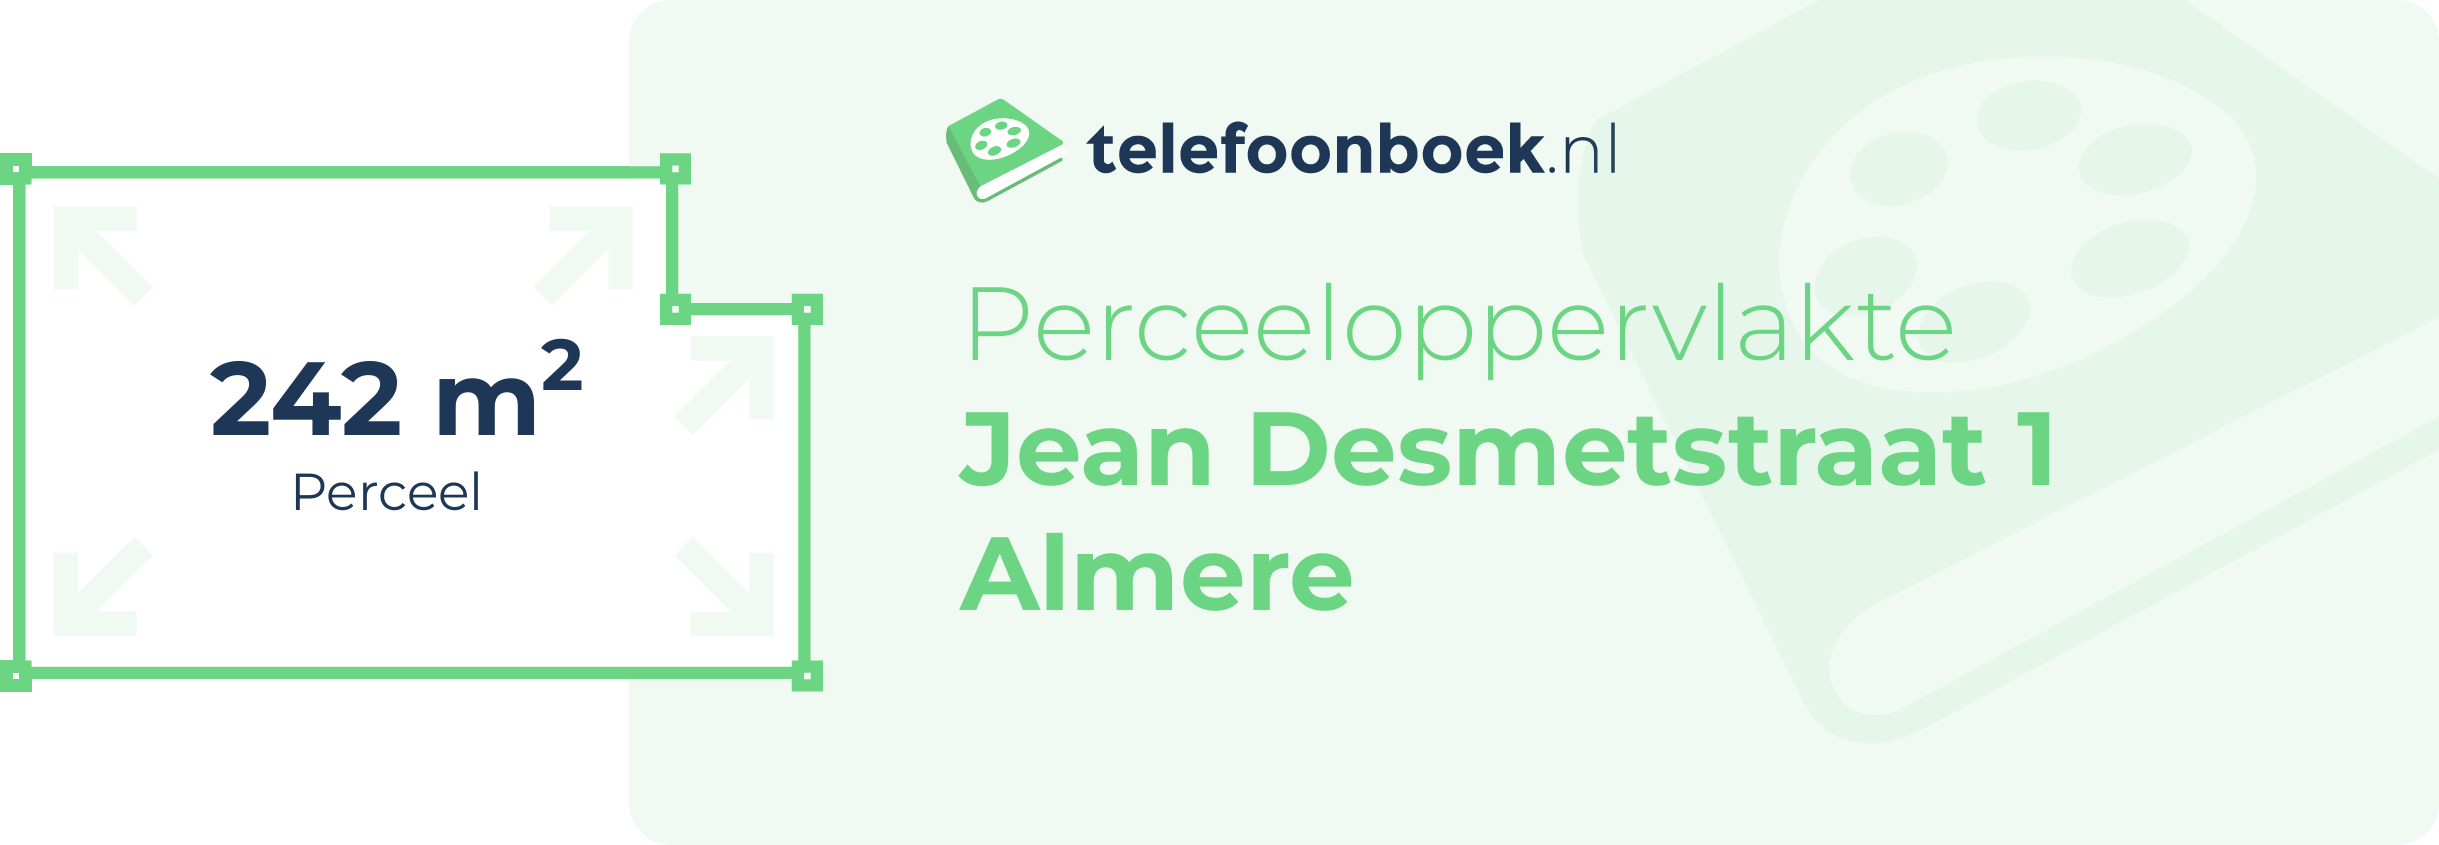 Perceeloppervlakte Jean Desmetstraat 1 Almere